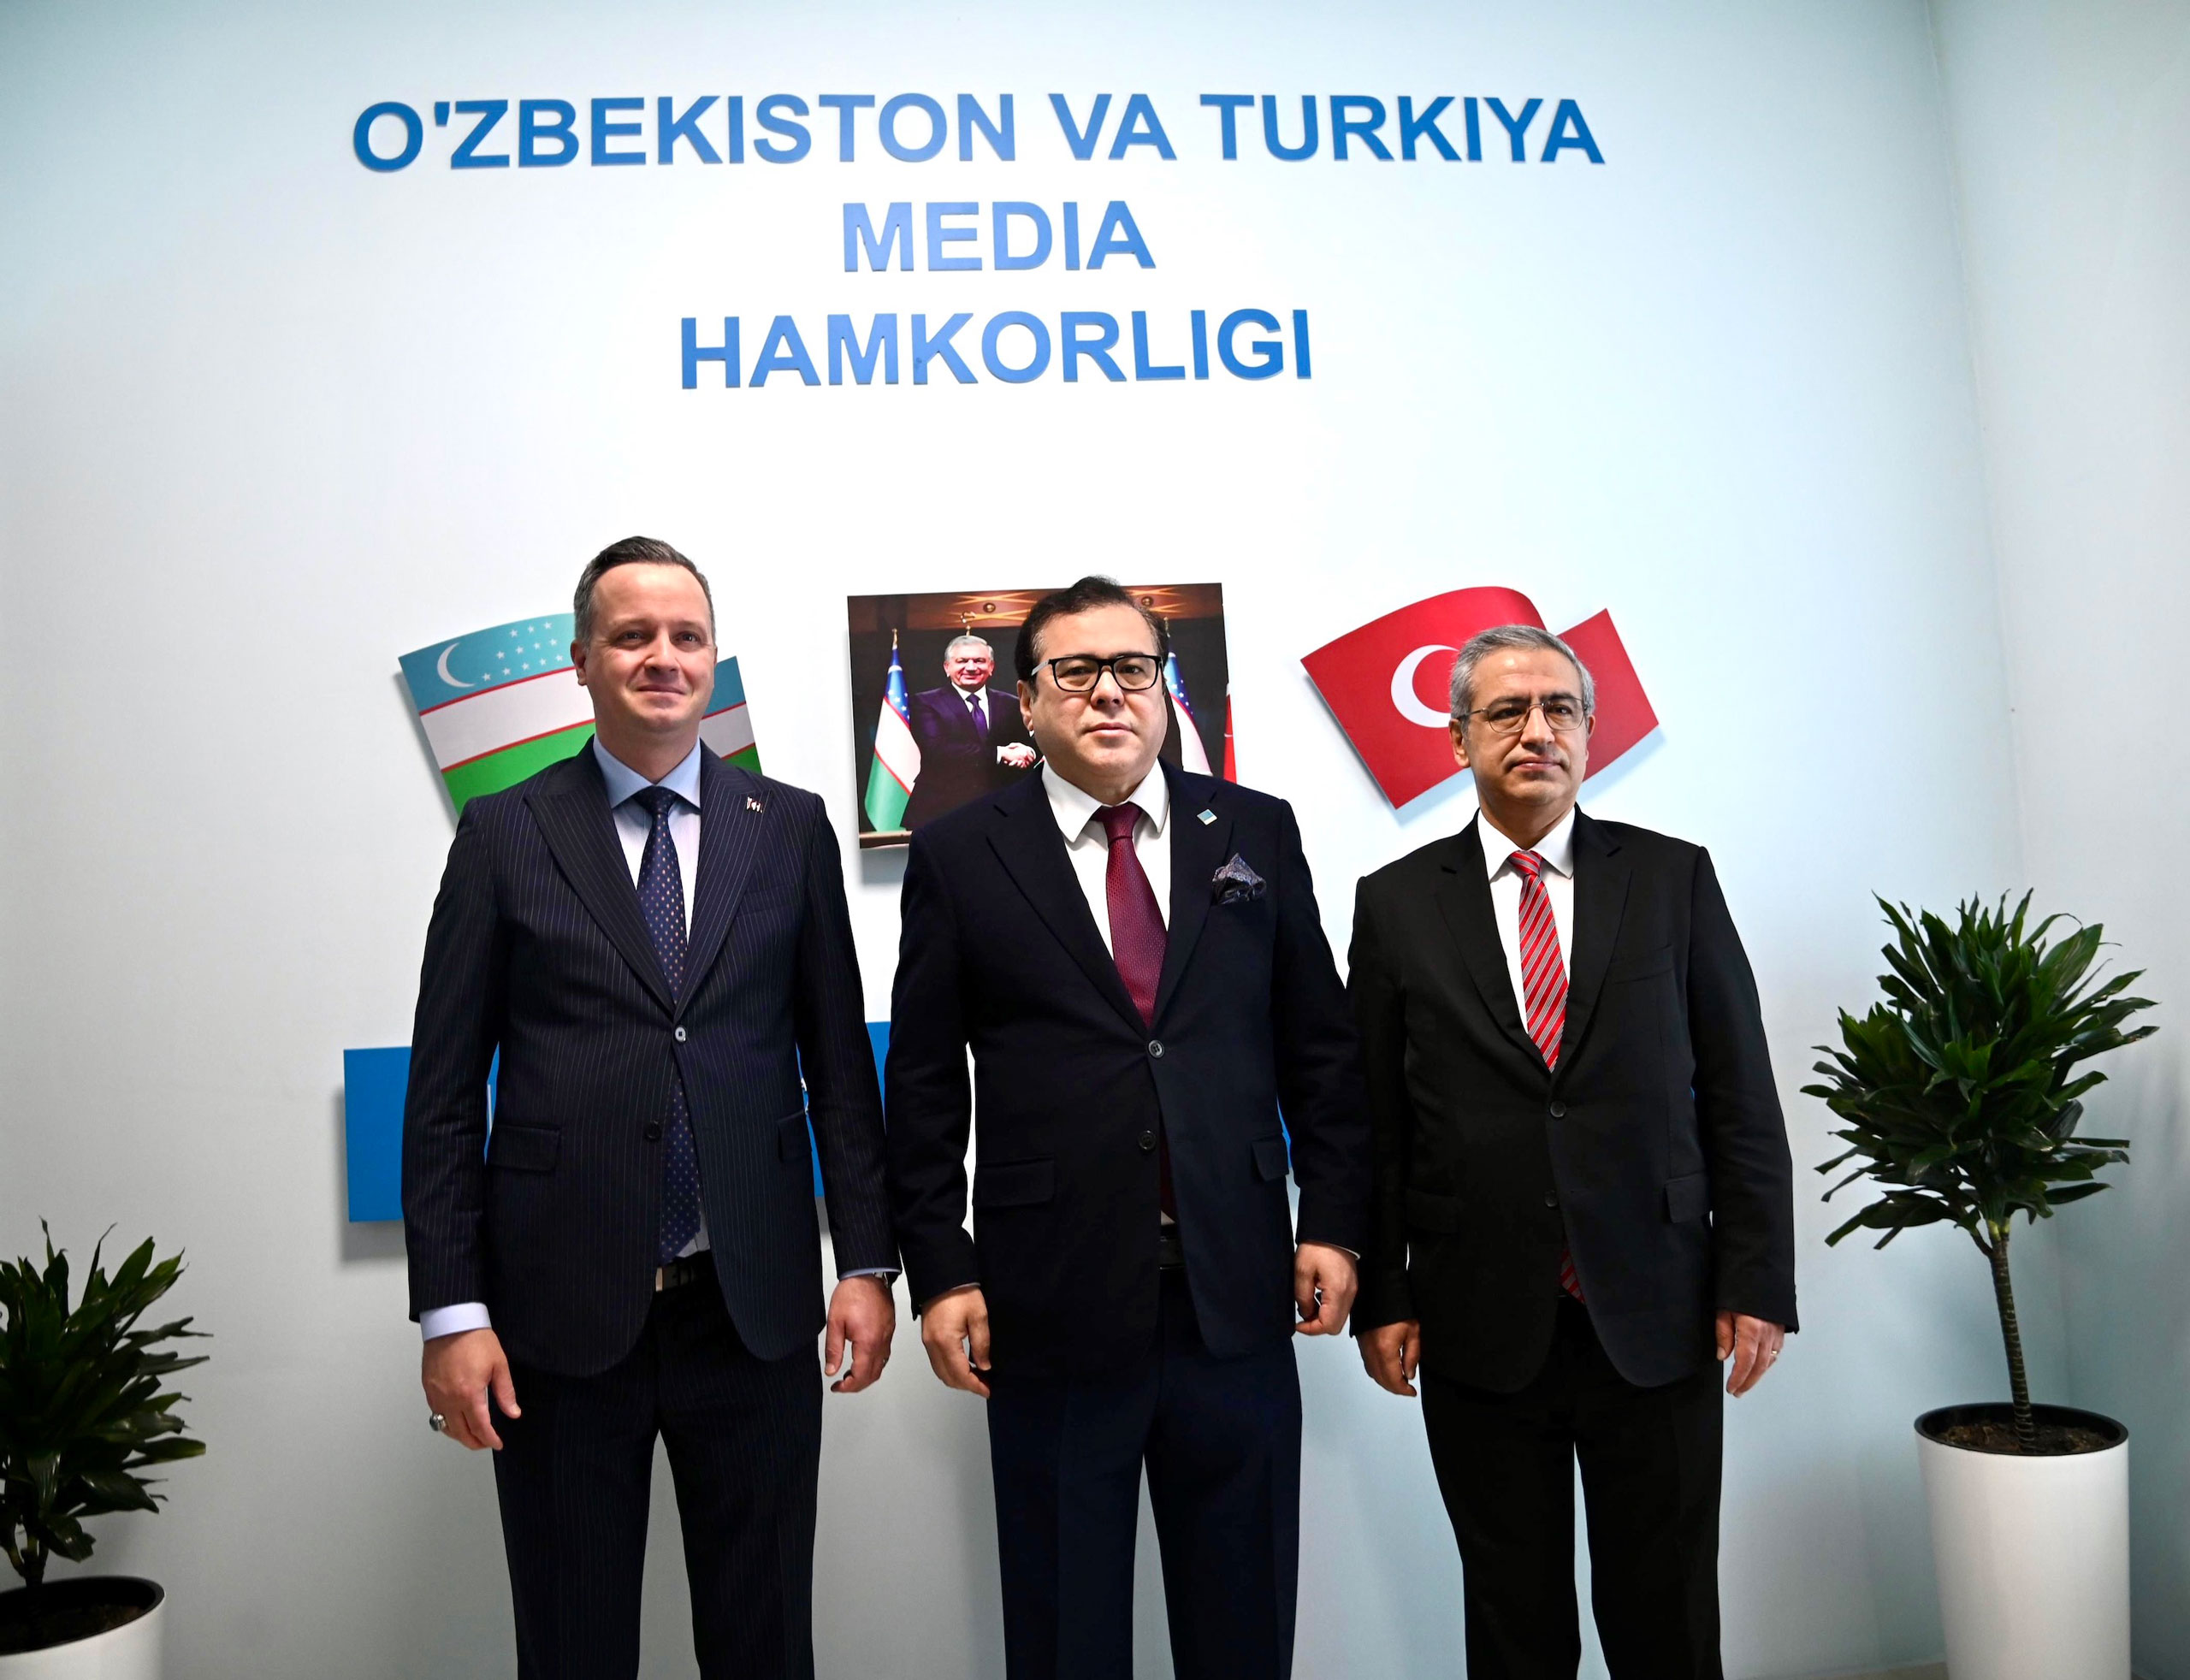 TİKA Başkanı Serkan Kayalar’ın Özbekistan Programı